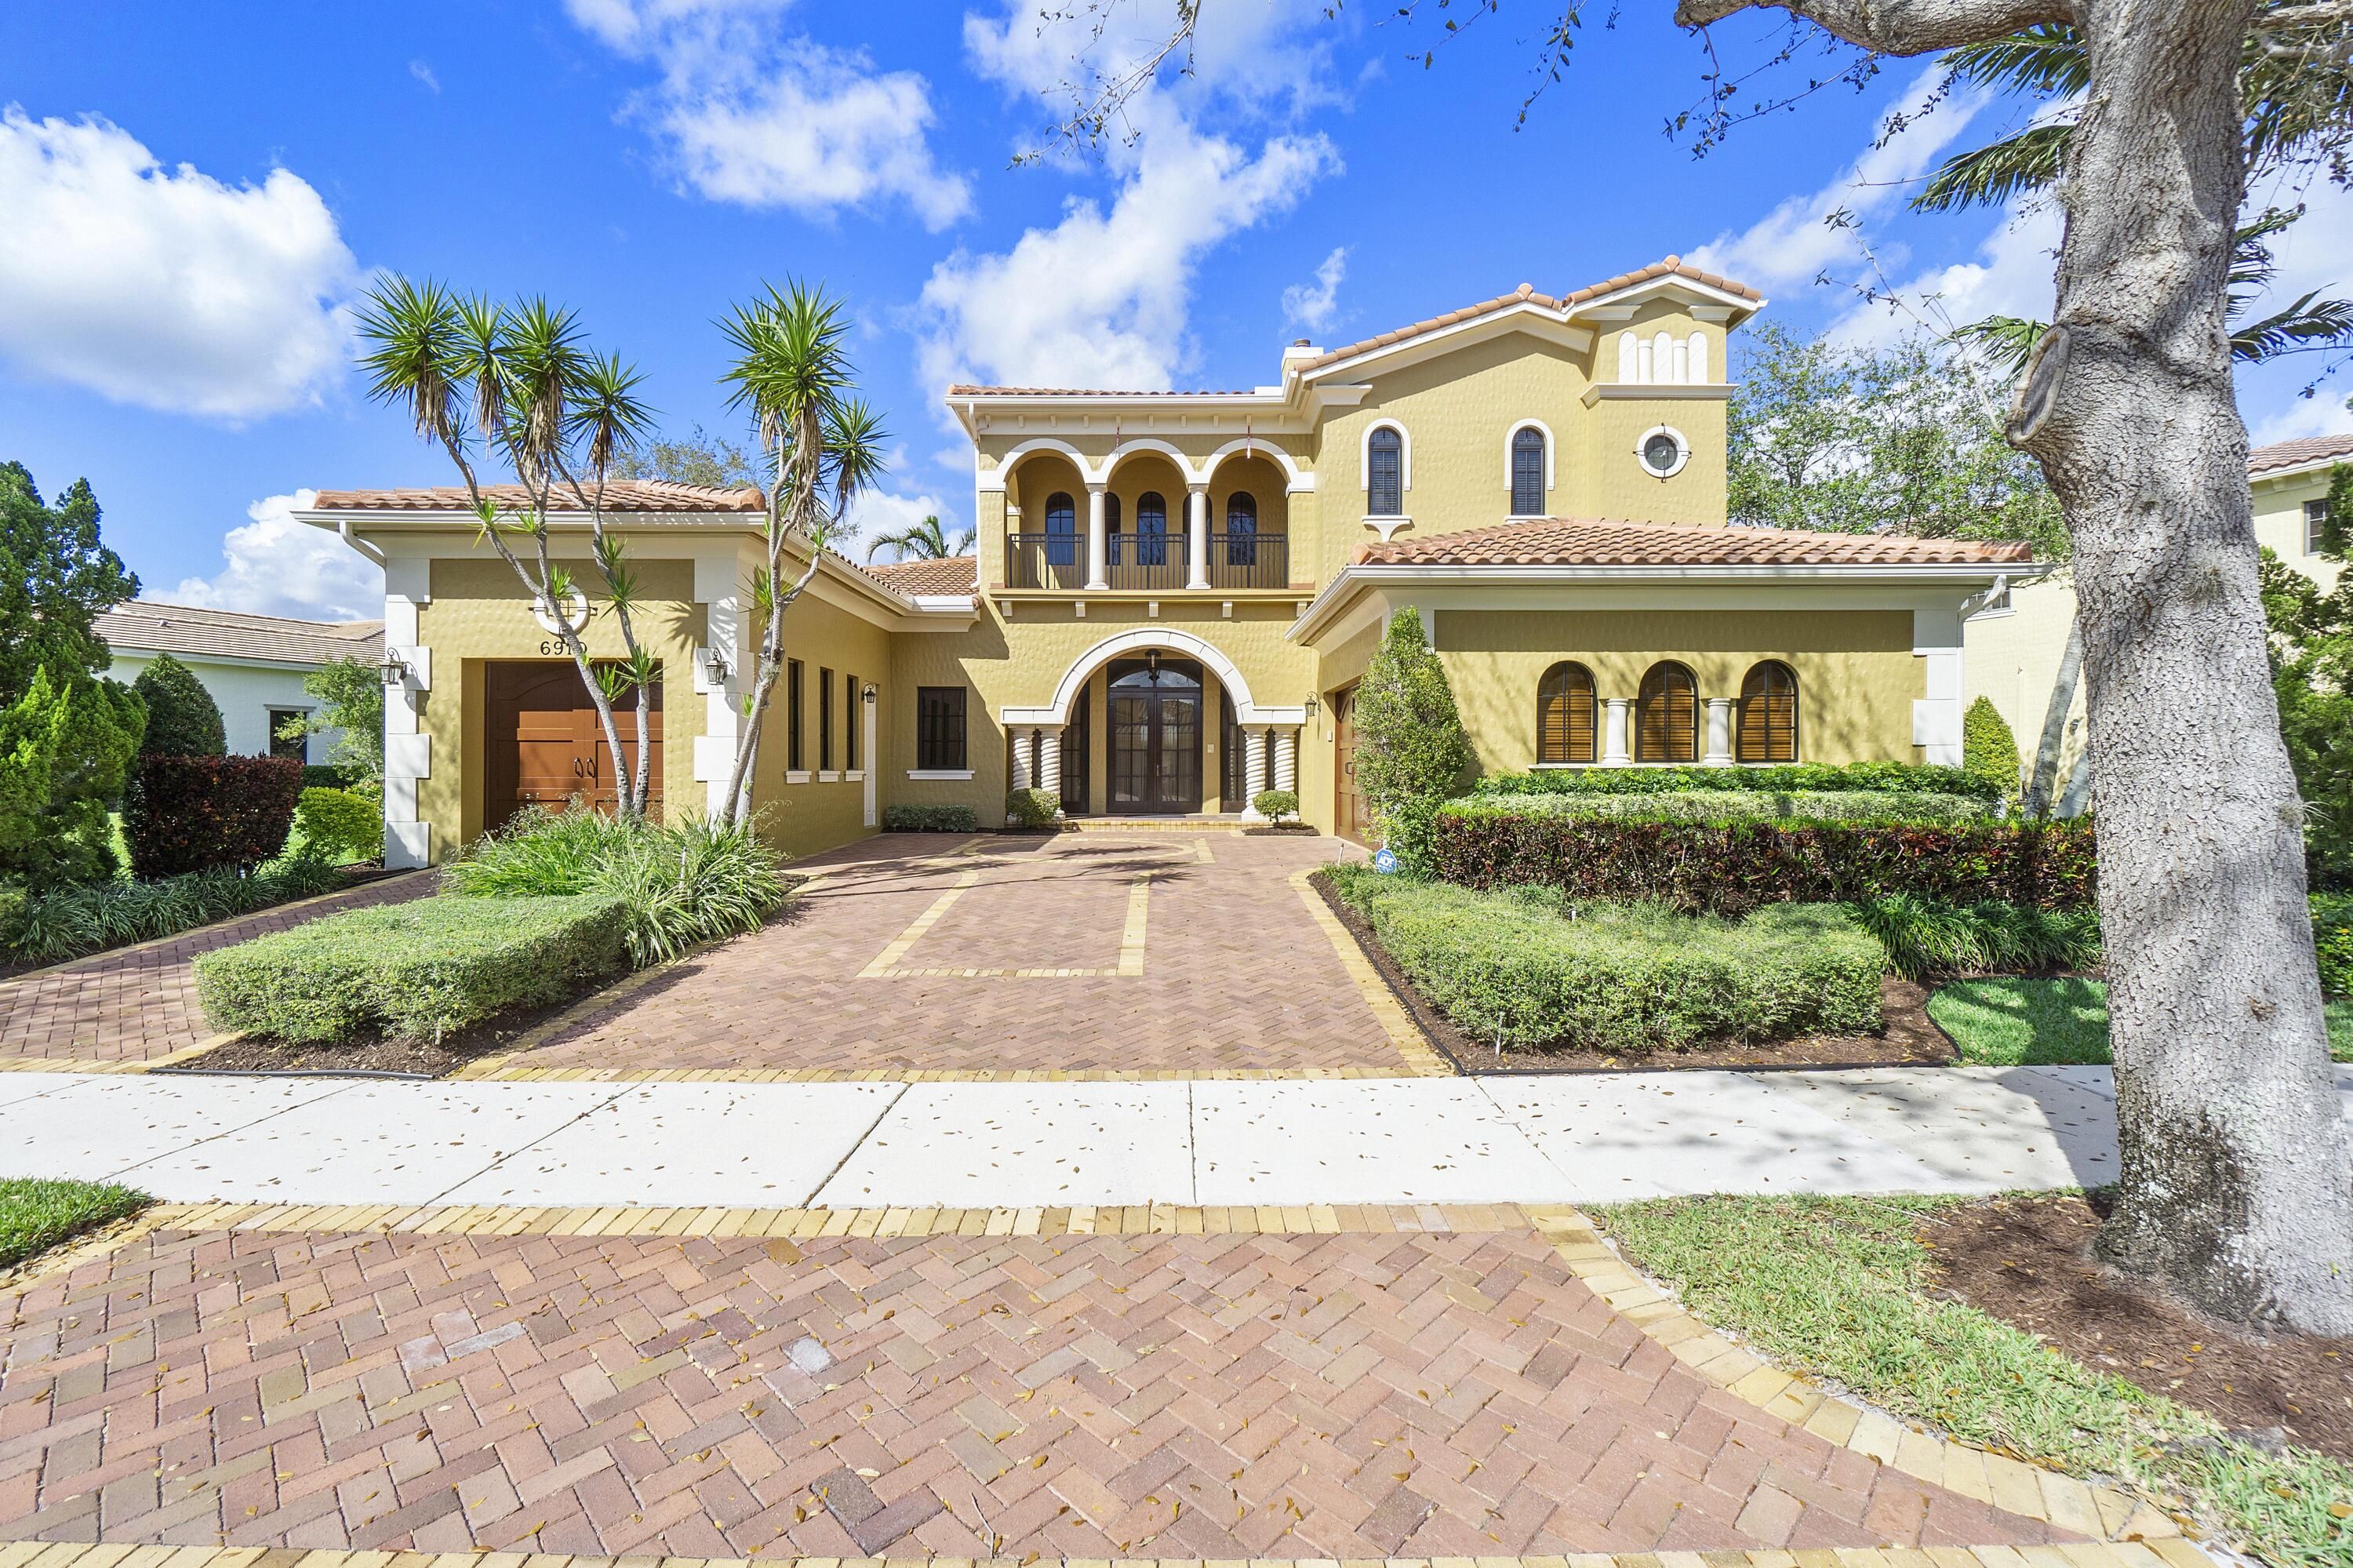 Gables Estates - Parkland, FL Homes for Sale & Real Estate |  neighborhoods.com